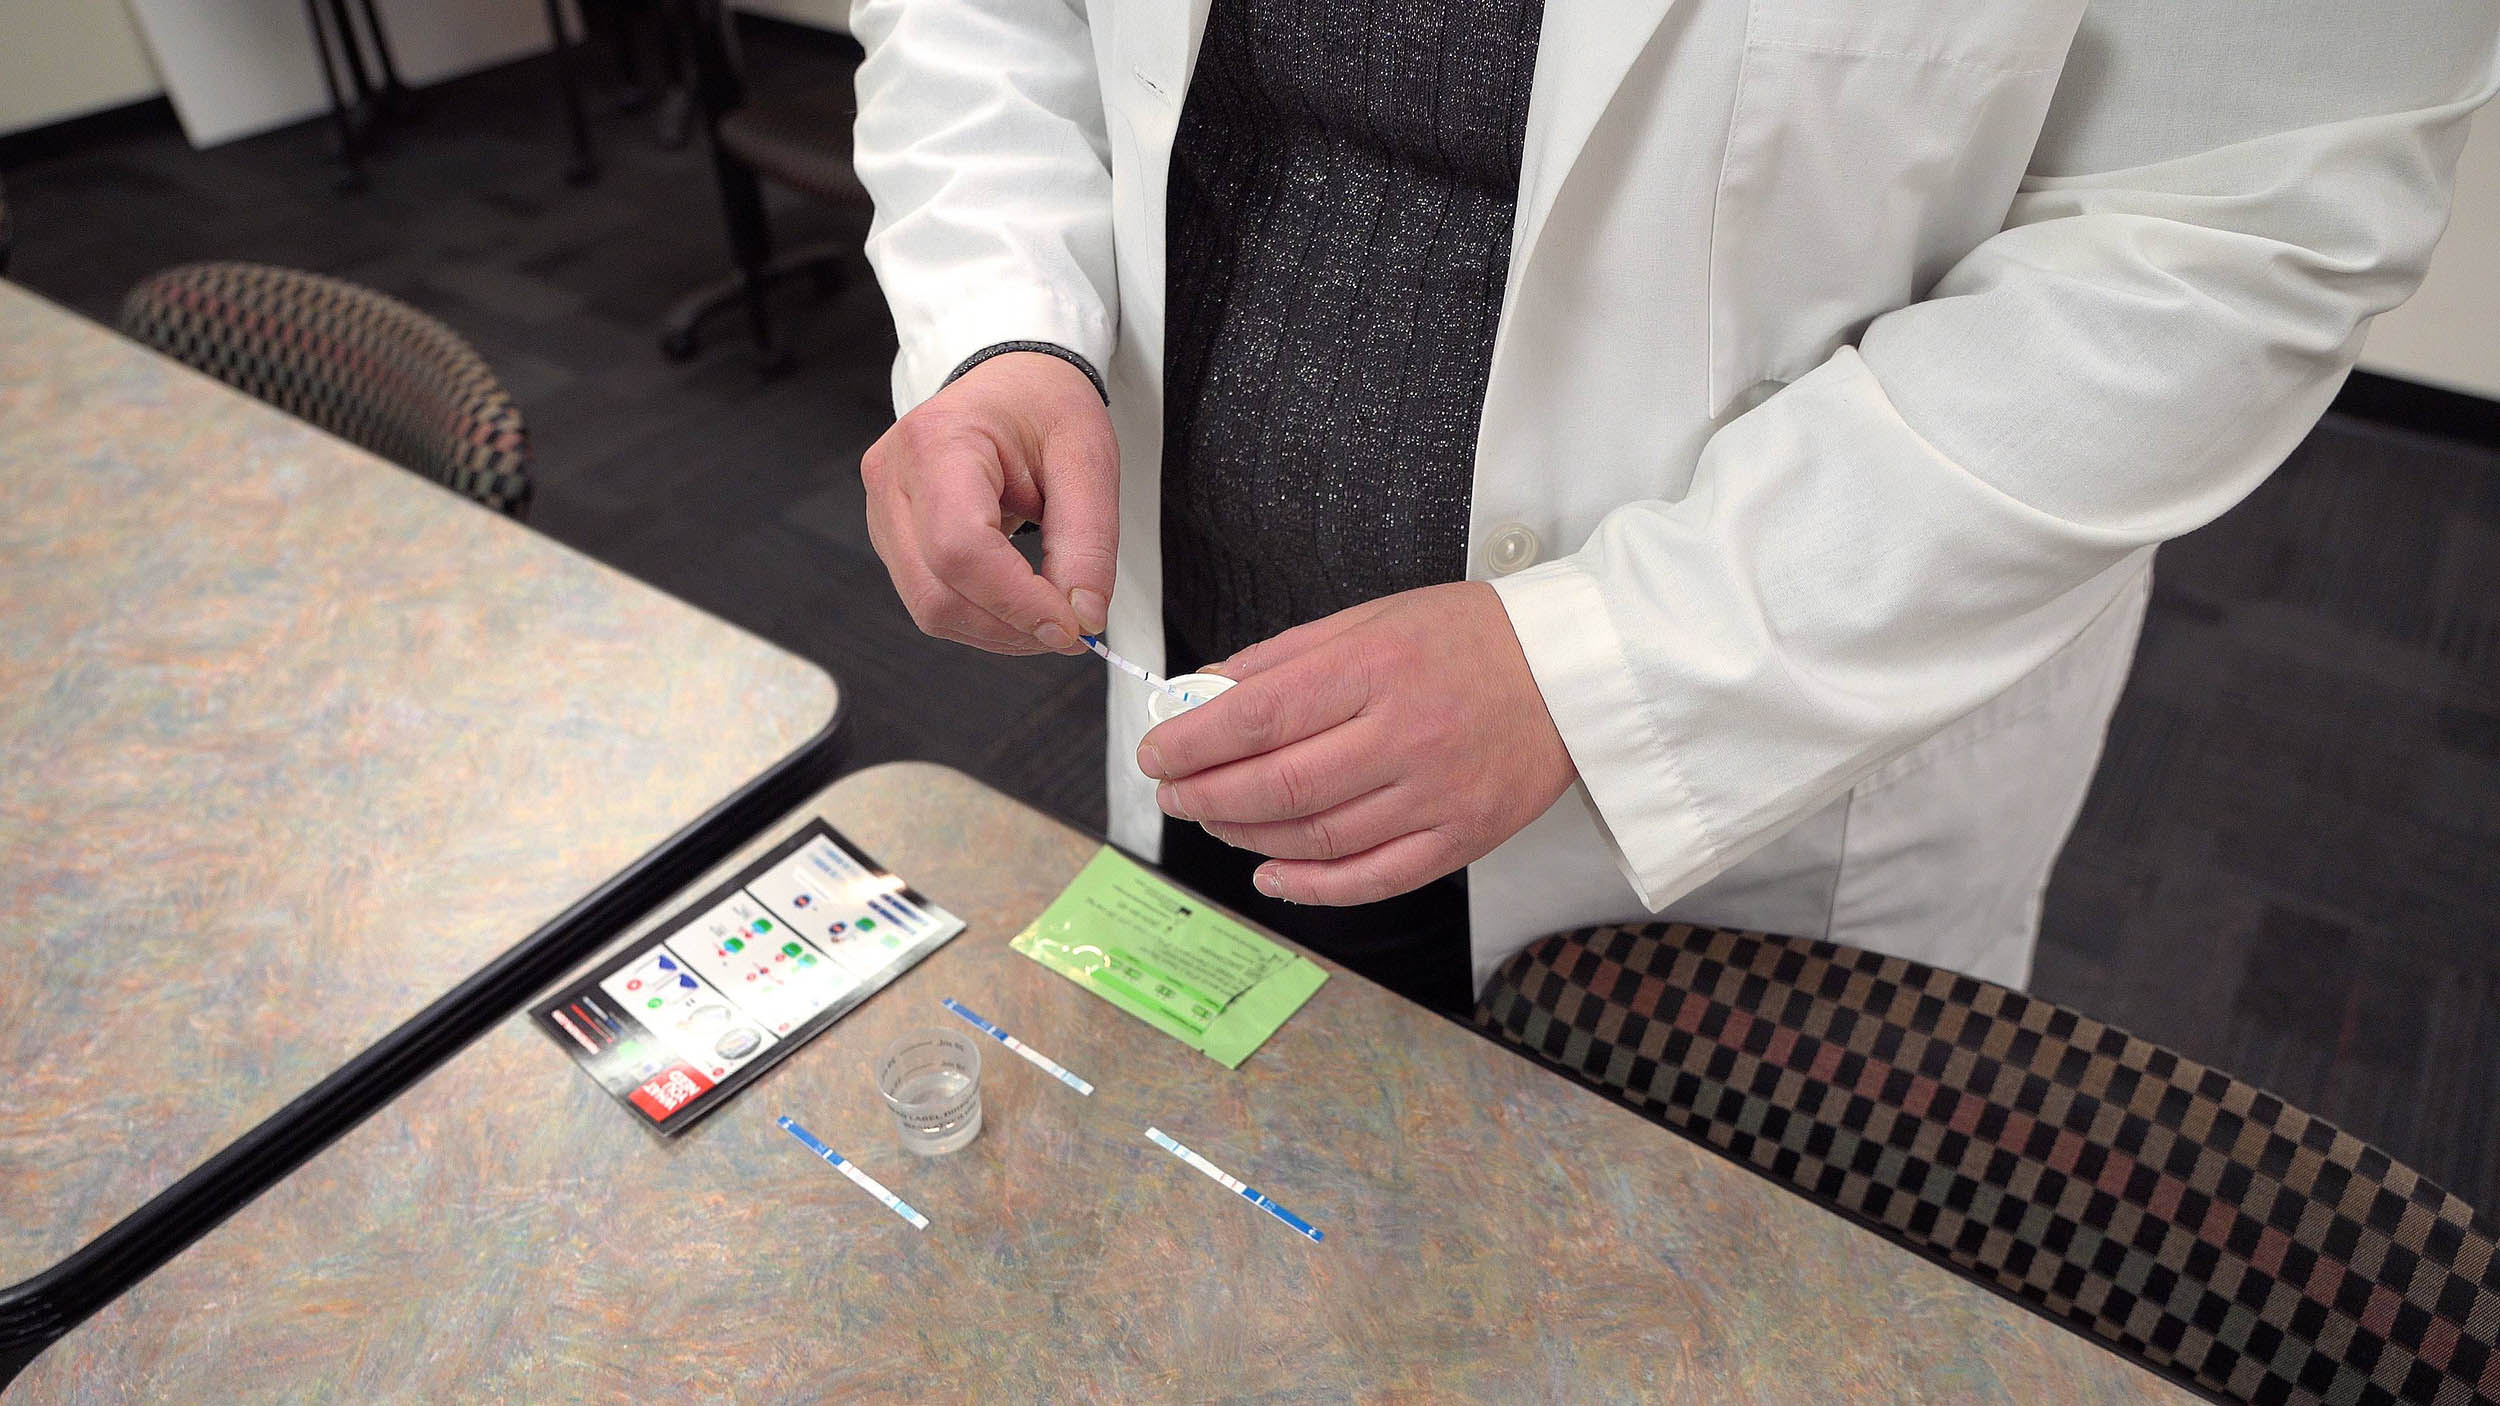 Un professionista medico che mostra una striscia reattiva al fentanil